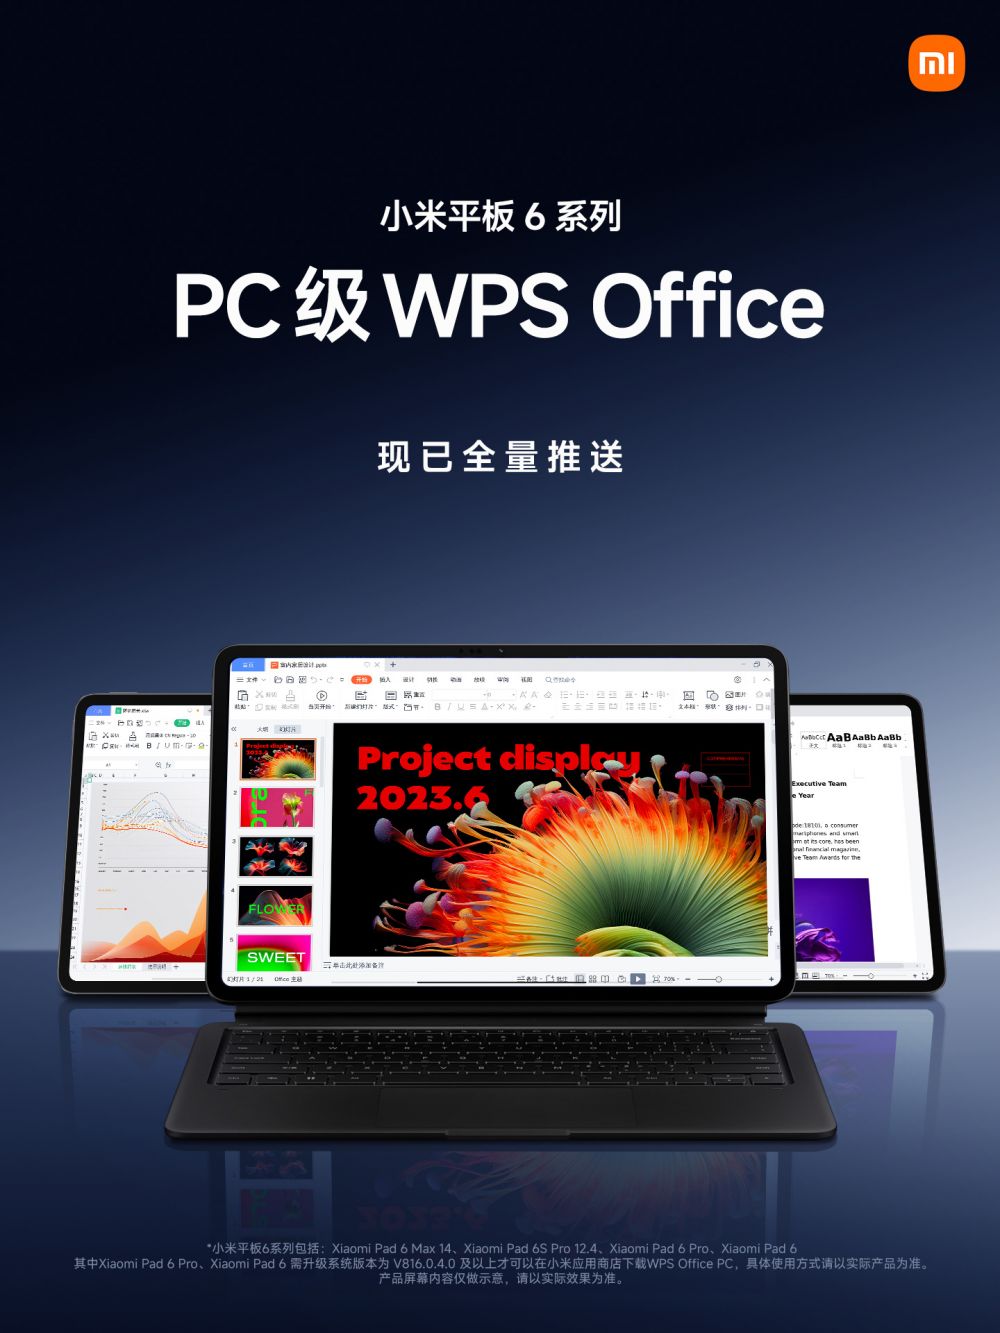 小米平板6系列全量推送PC级WPSOffice